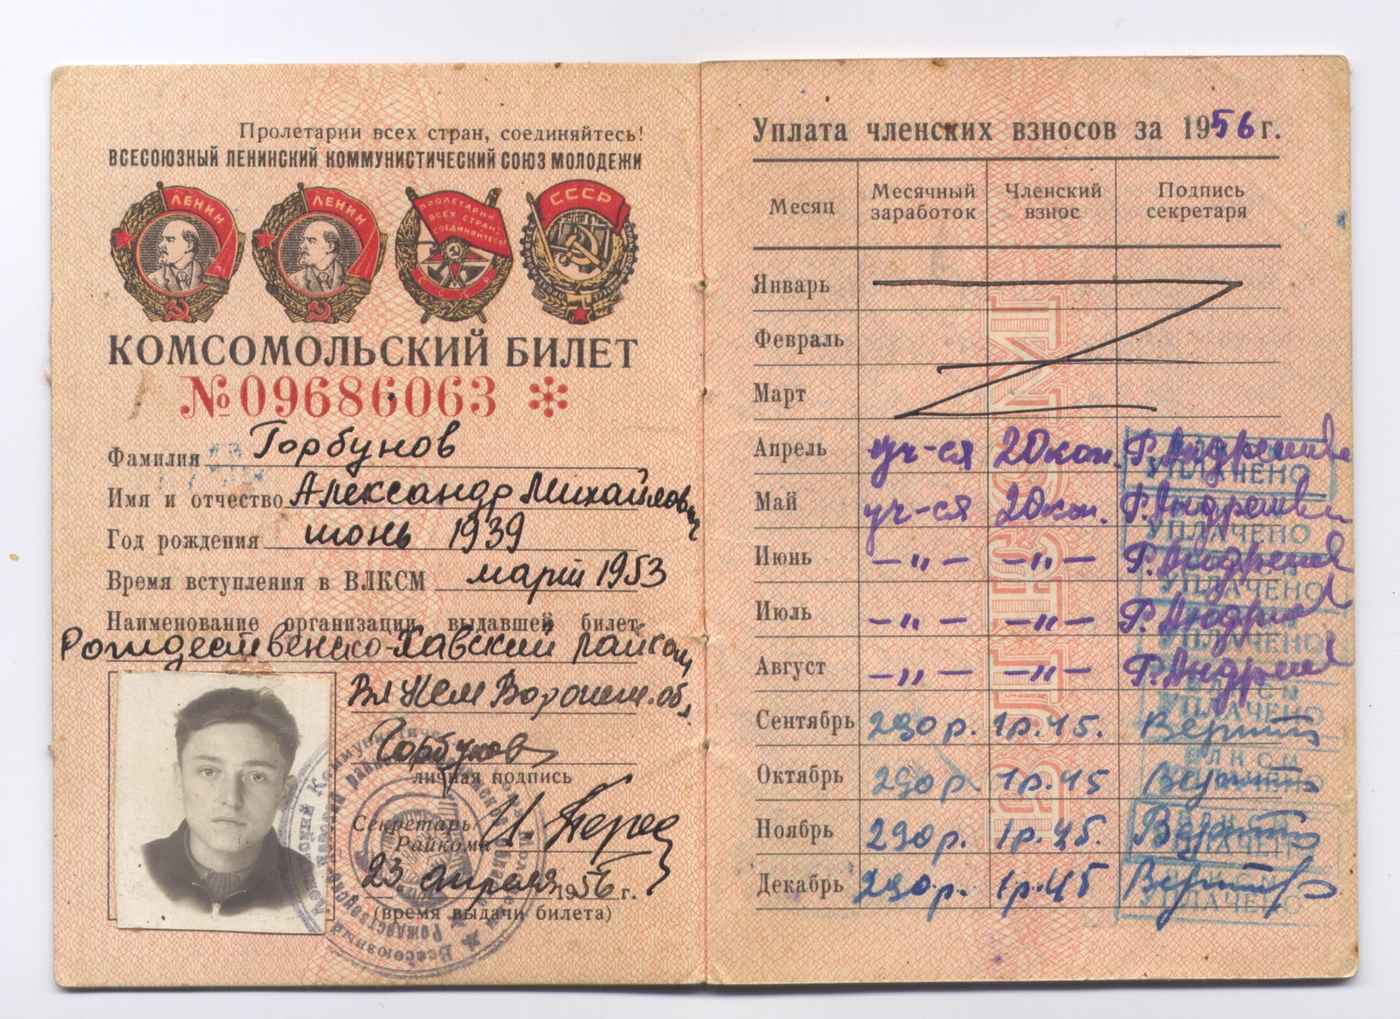 Комсомольский билет № 09686063 на имя Горбунова А.М. образца 1956 г.